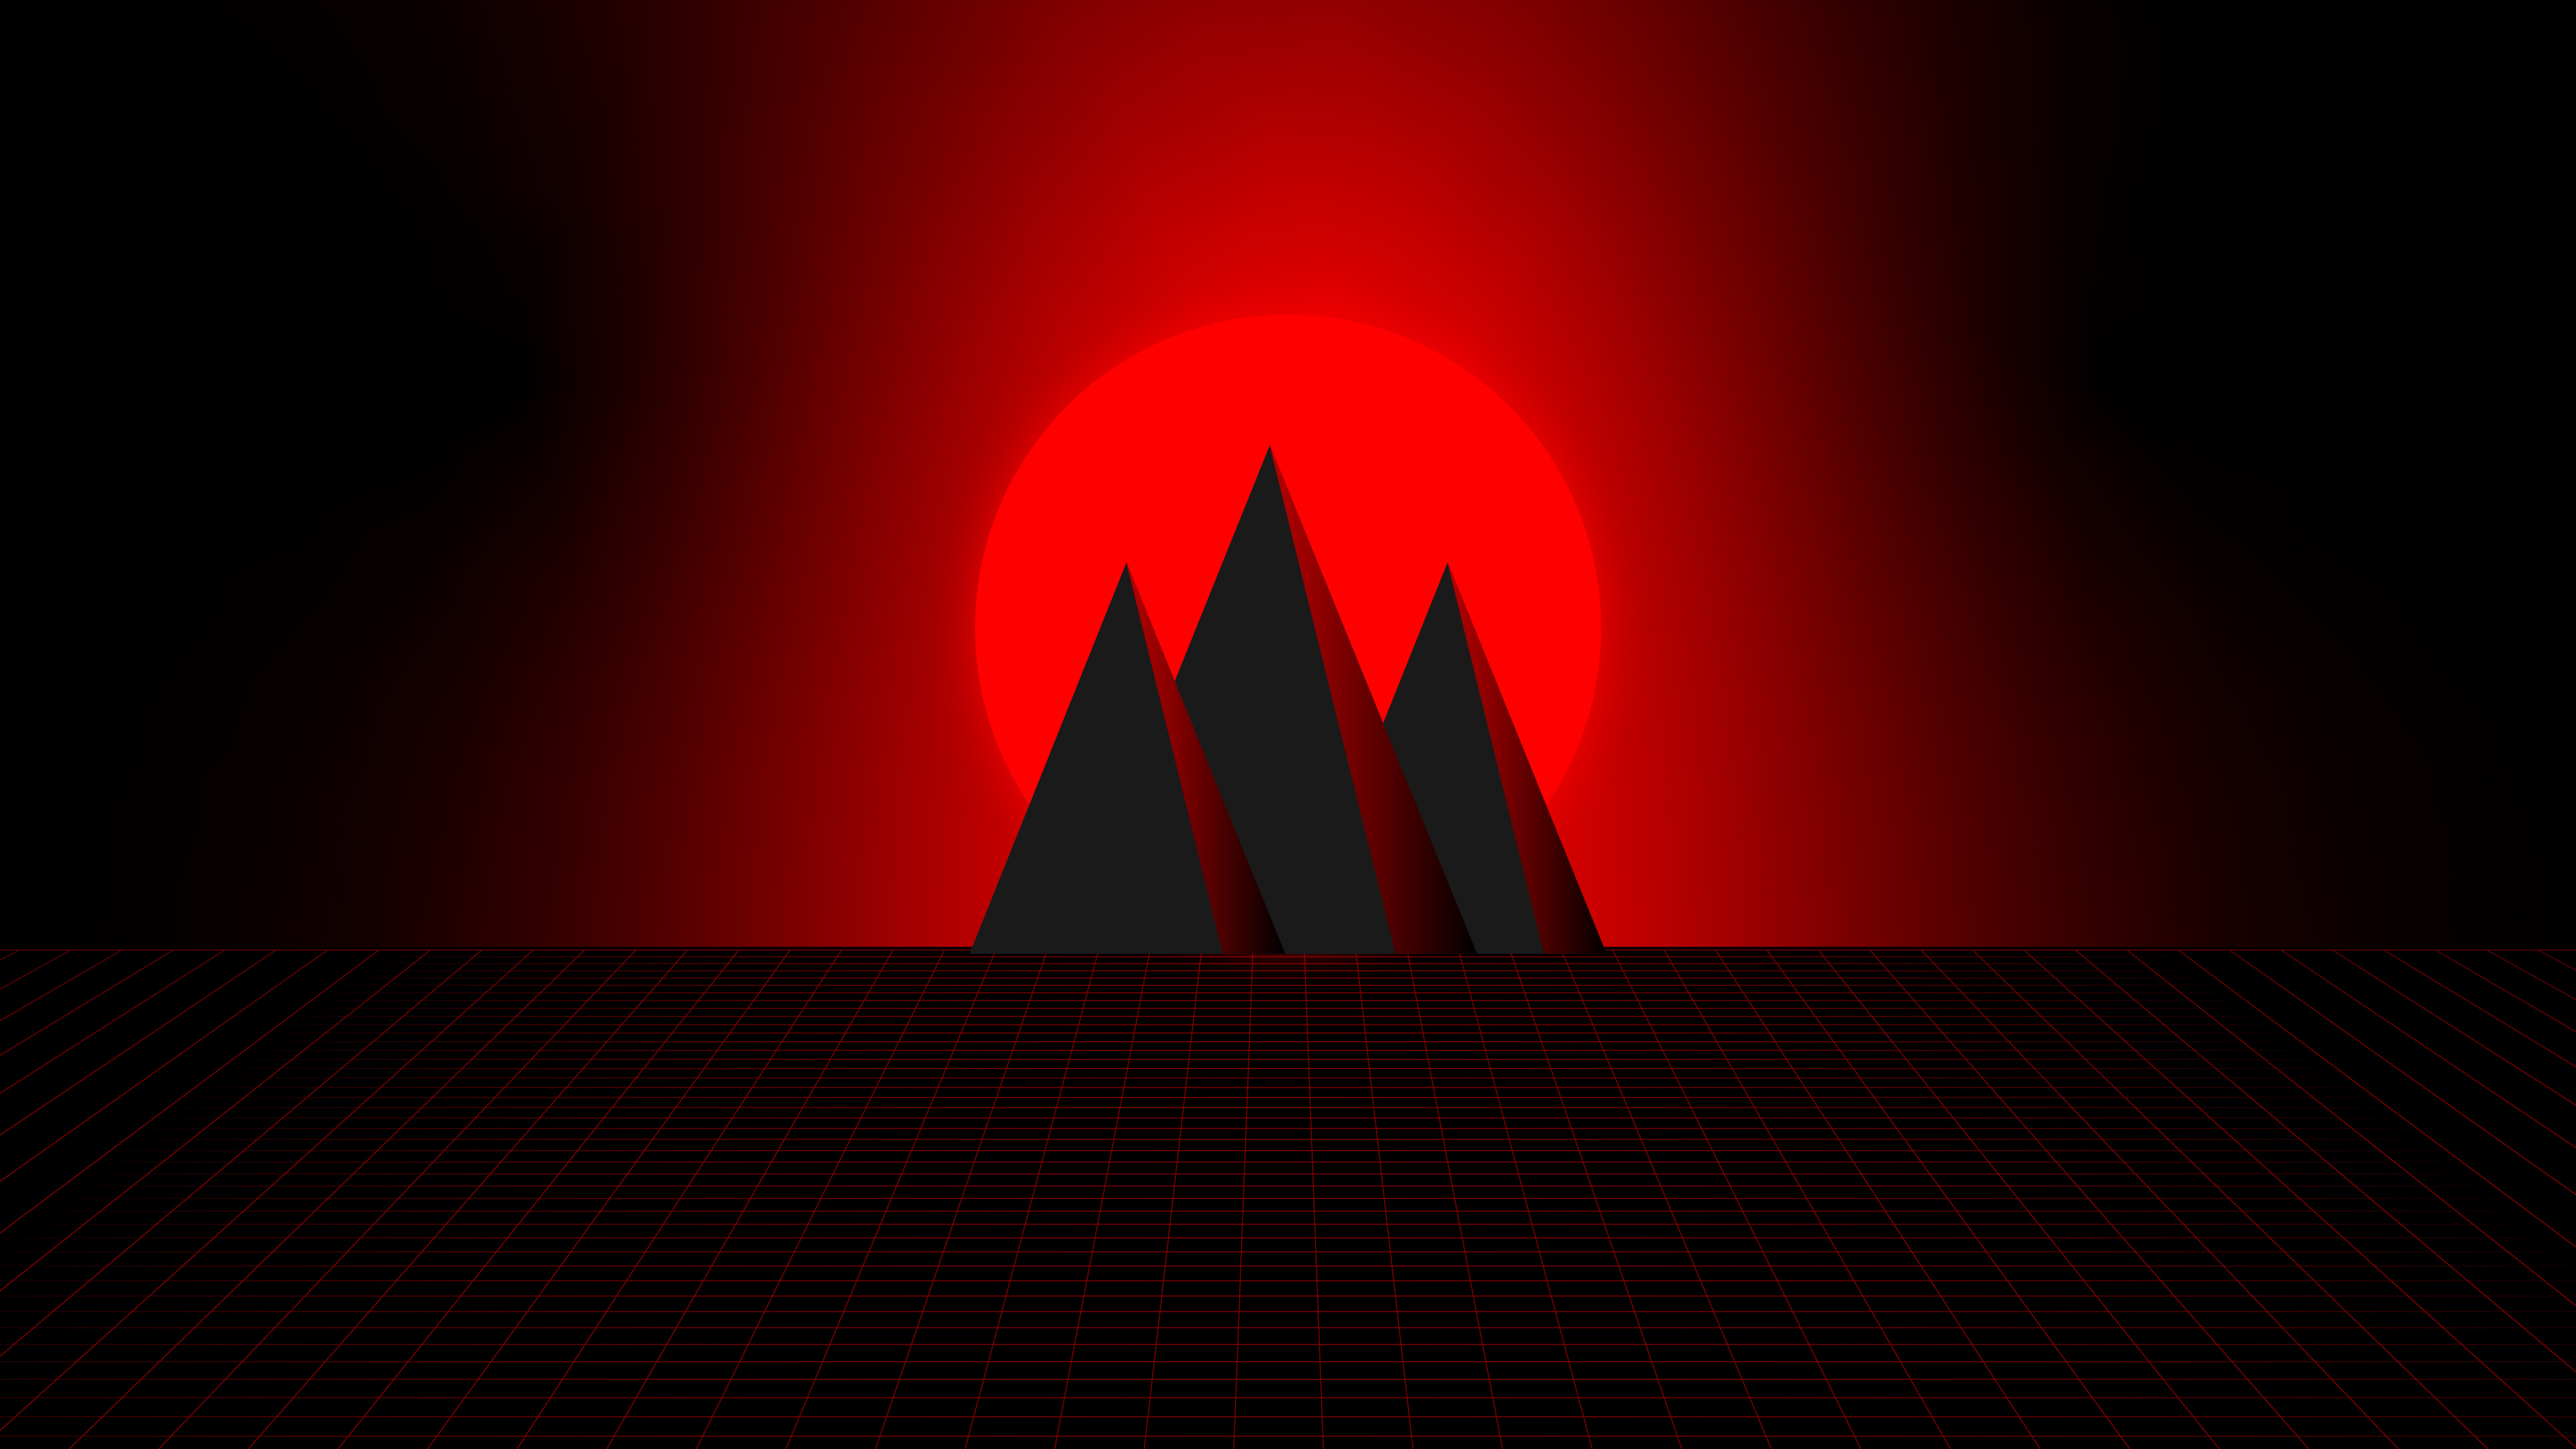 Hình nền núi đỏ đơn giản: Bức ảnh truyền tải cho bạn sự thư thái và bình yên với những thước phim về núi đỏ đơn giản. Hãy để bức ảnh này giúp bạn tìm lại sự thanh thản trong một cuộc sống đầy bộn bề.